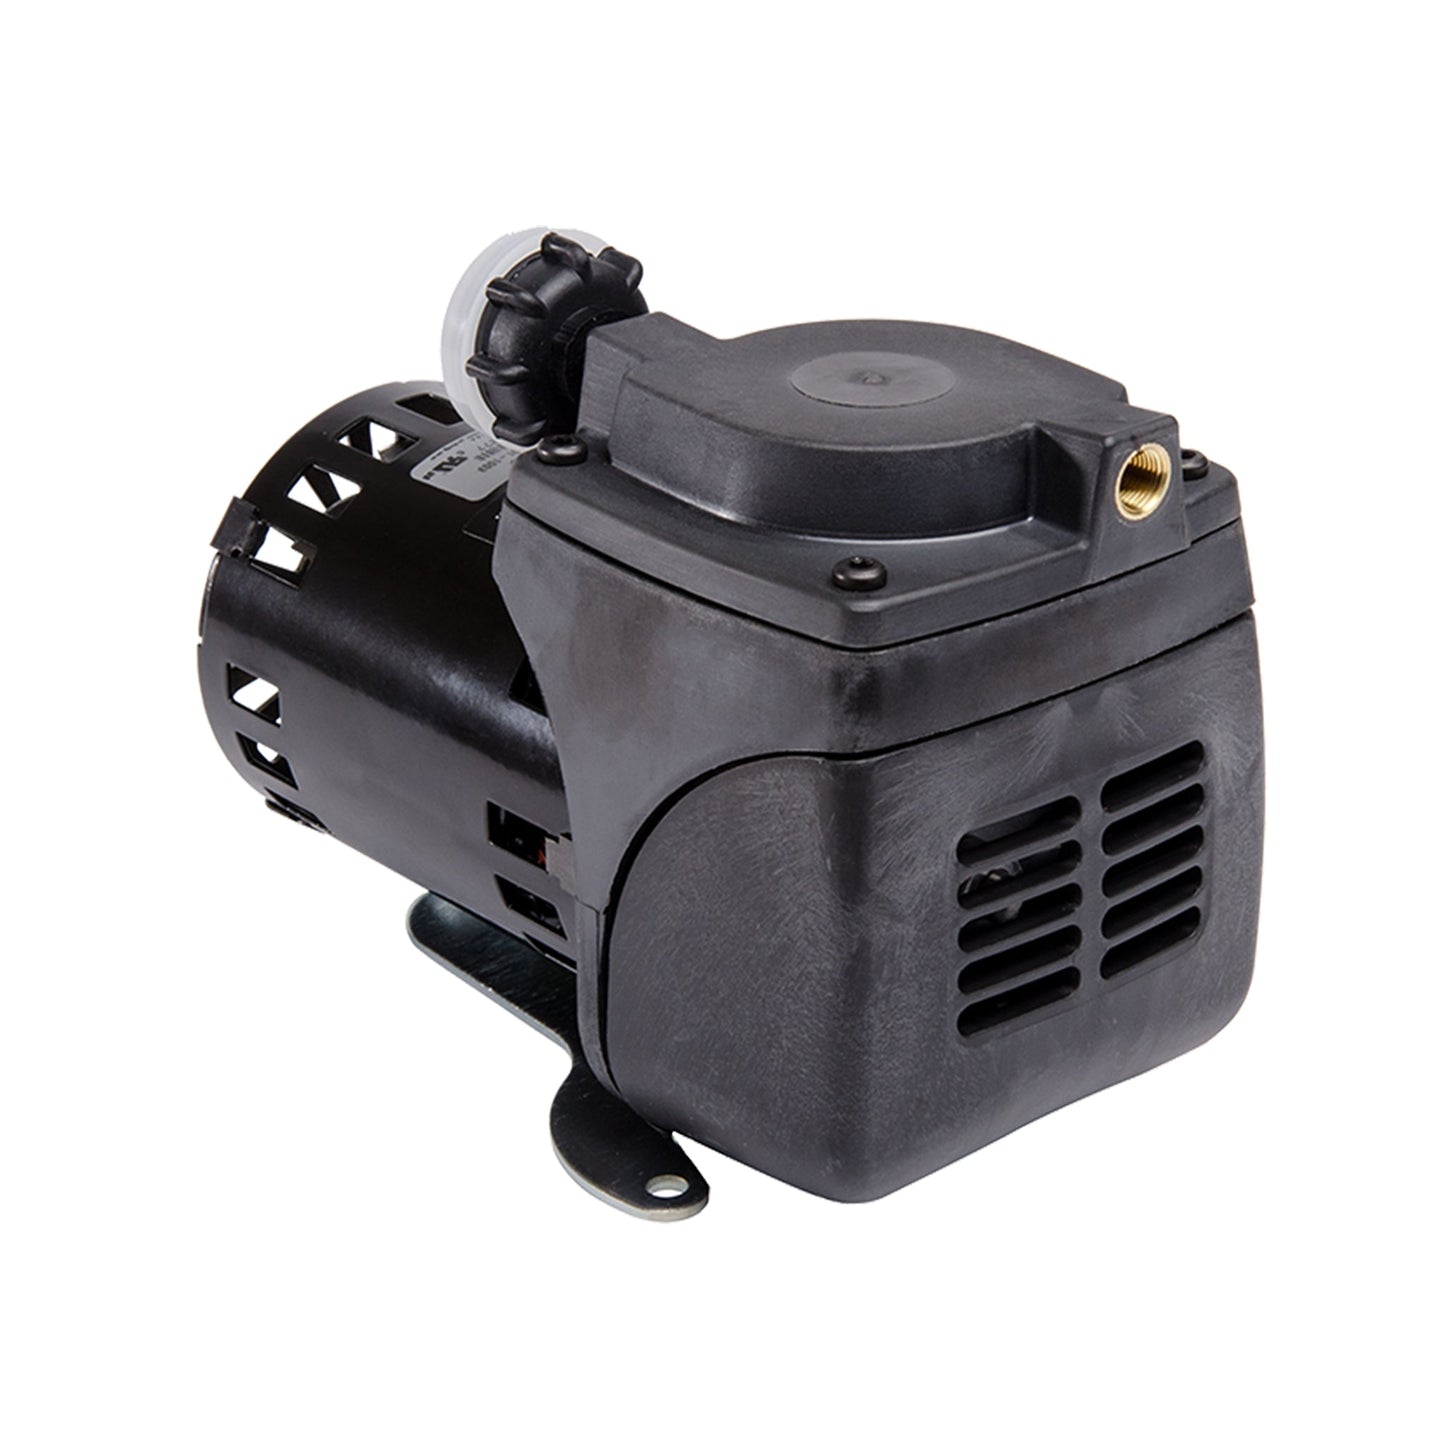 Gast 22D1180-201-1003 Diaphragm Air Compressor Vacuum Pump